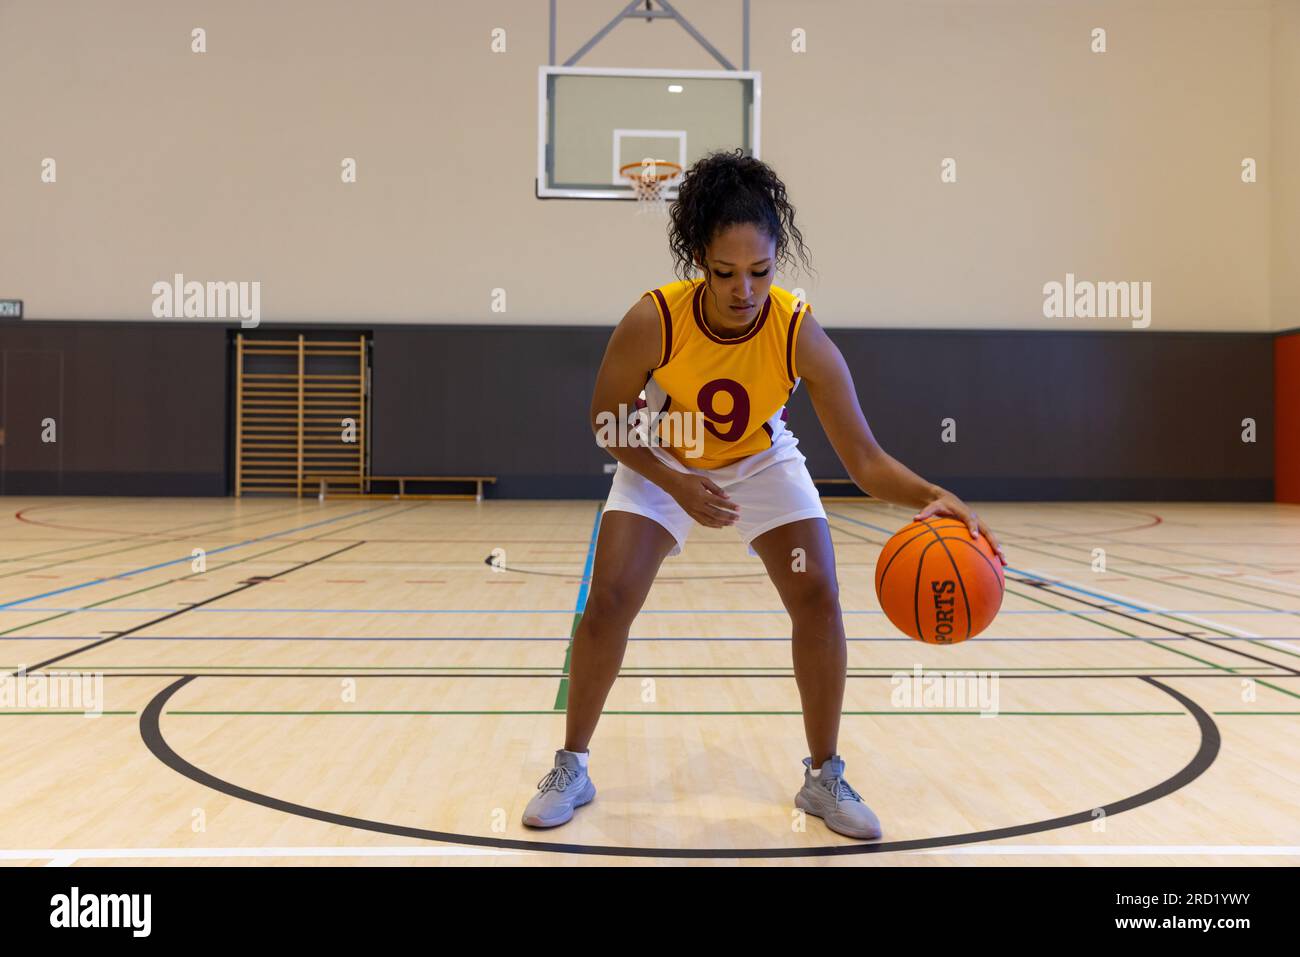 Fokussierte Basketballspielerin, die Sportkleidung mit Nummer trägt und im Fitnessstudio Basketball spielt Stockfoto